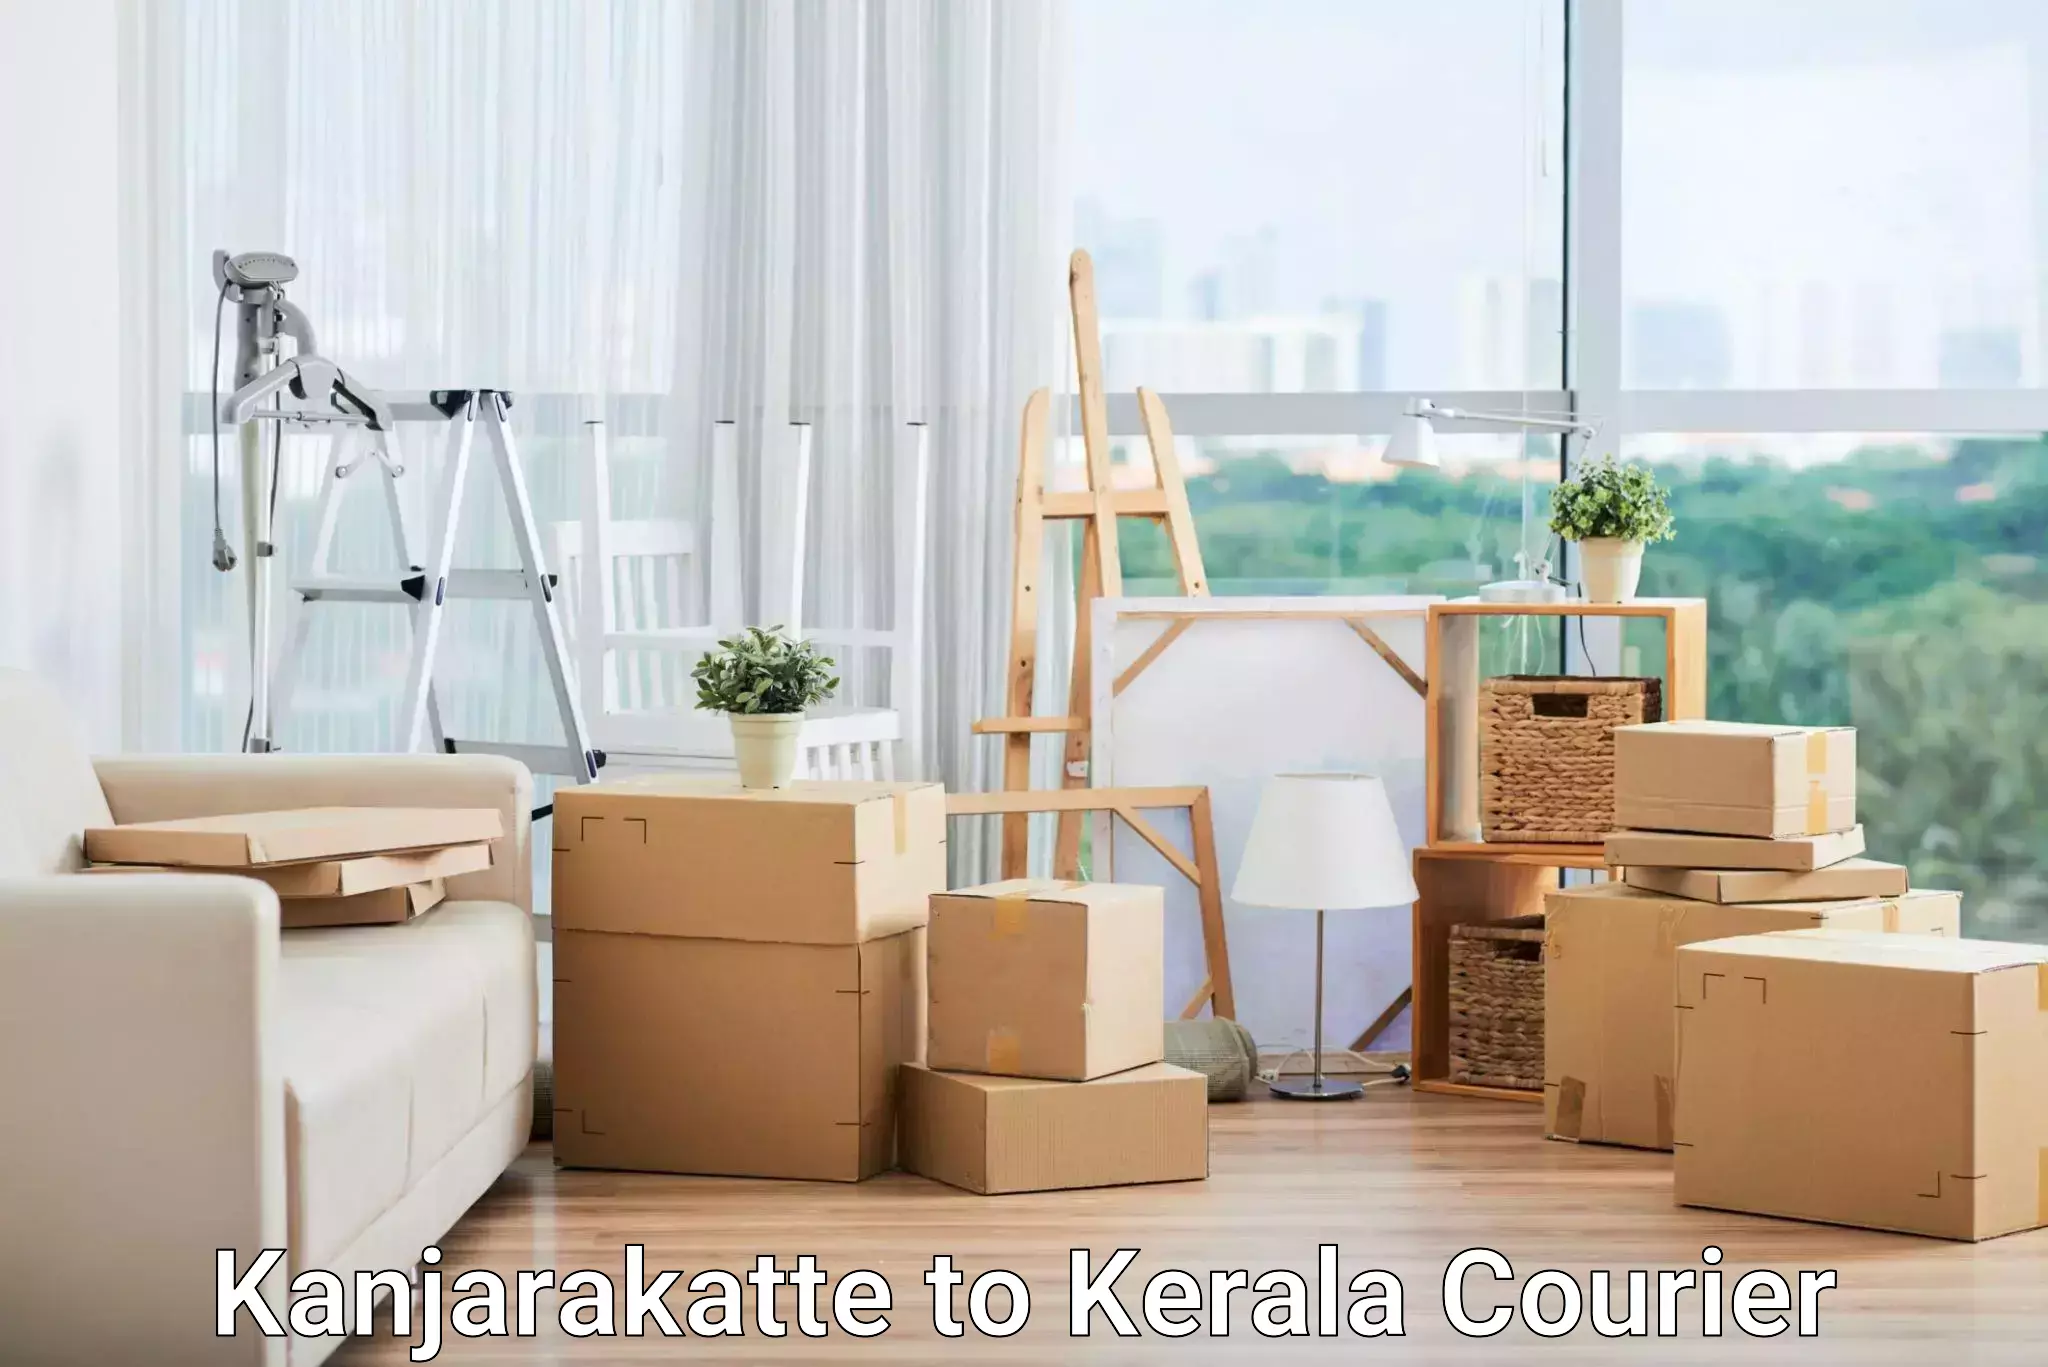 Modern courier technology Kanjarakatte to Kiliyanthara